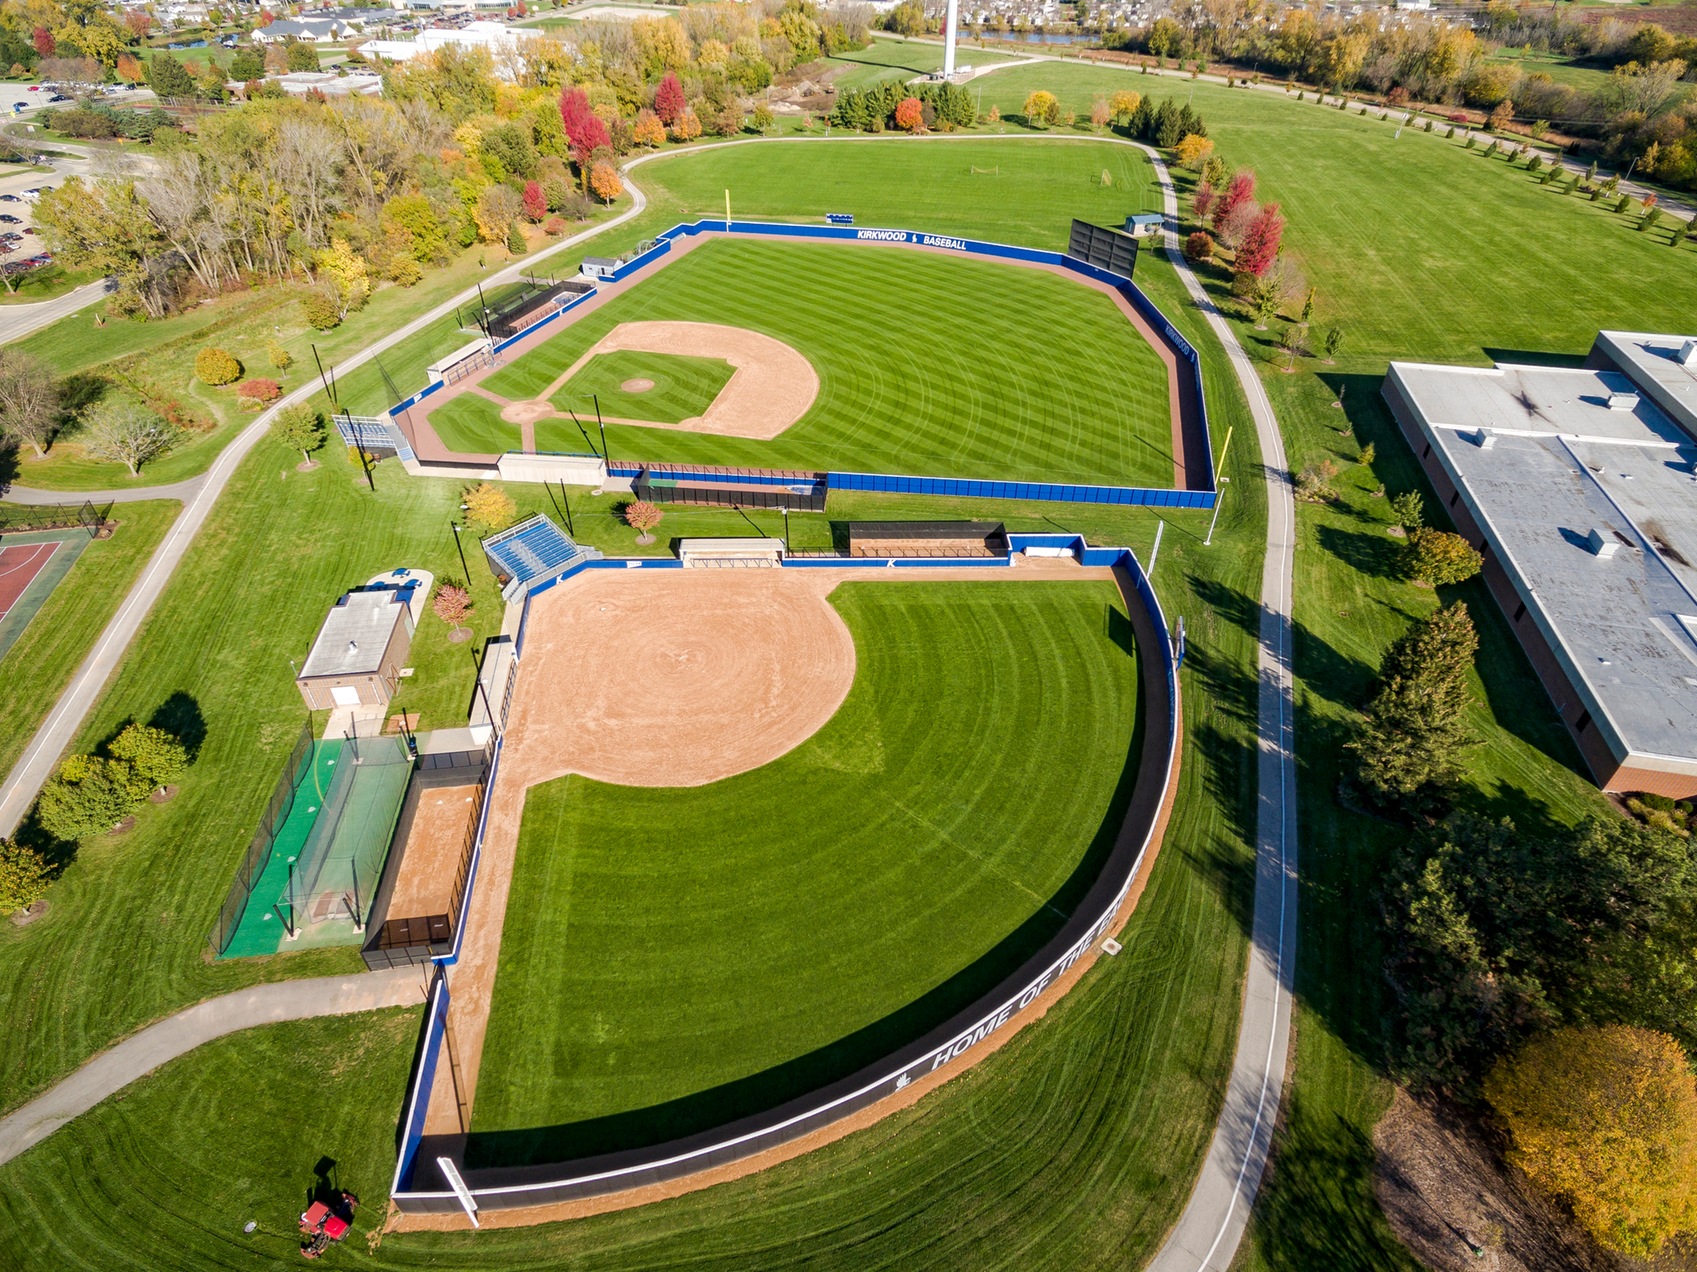 Baseball and Softball Fields